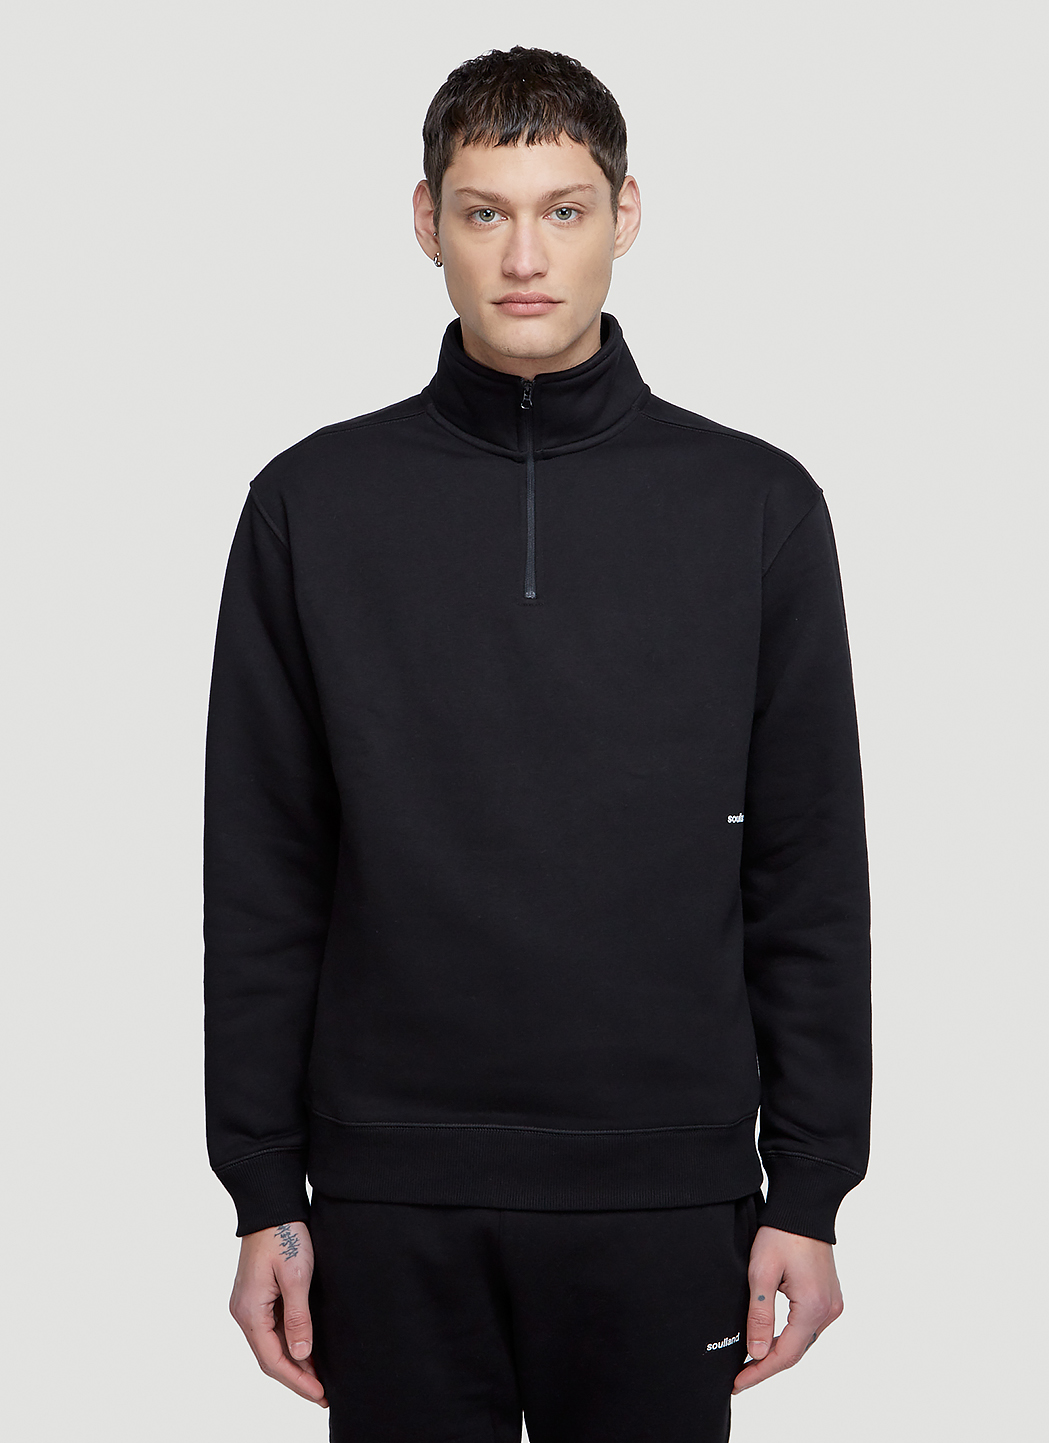 Soulland Ken Half Zip Sweatshirt in Black | LN-CC®